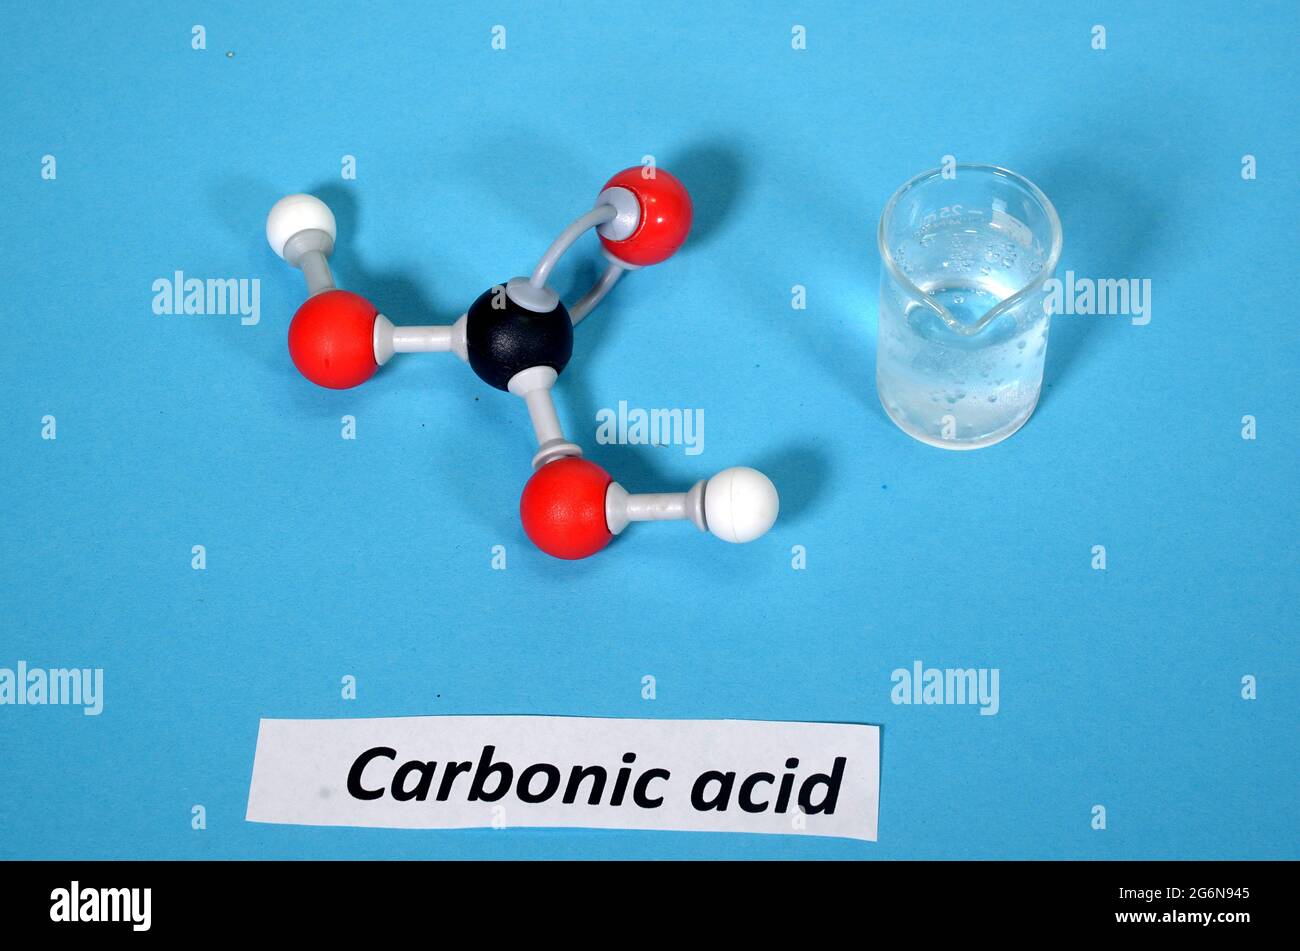 Modelo de molécula de ácido carbónico junto con la muestra en un vaso de precipitados. El blanco es hidrógeno, el negro es carbono y el rojo es oxígeno. Foto de stock